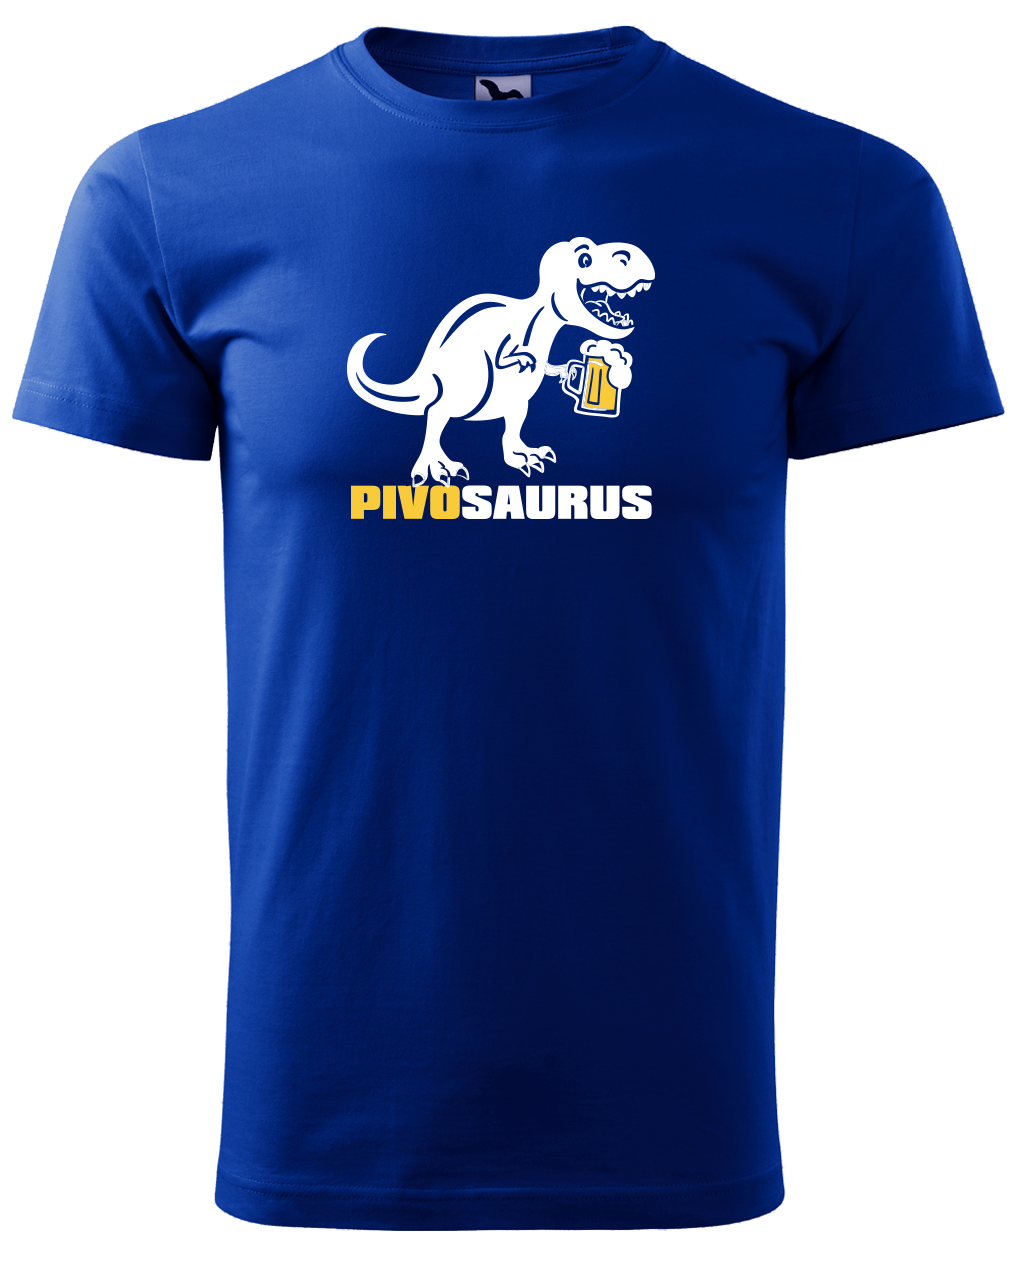 Vtipné tričko - Pivosaurus Velikost: M, Barva: Královská modrá (05)